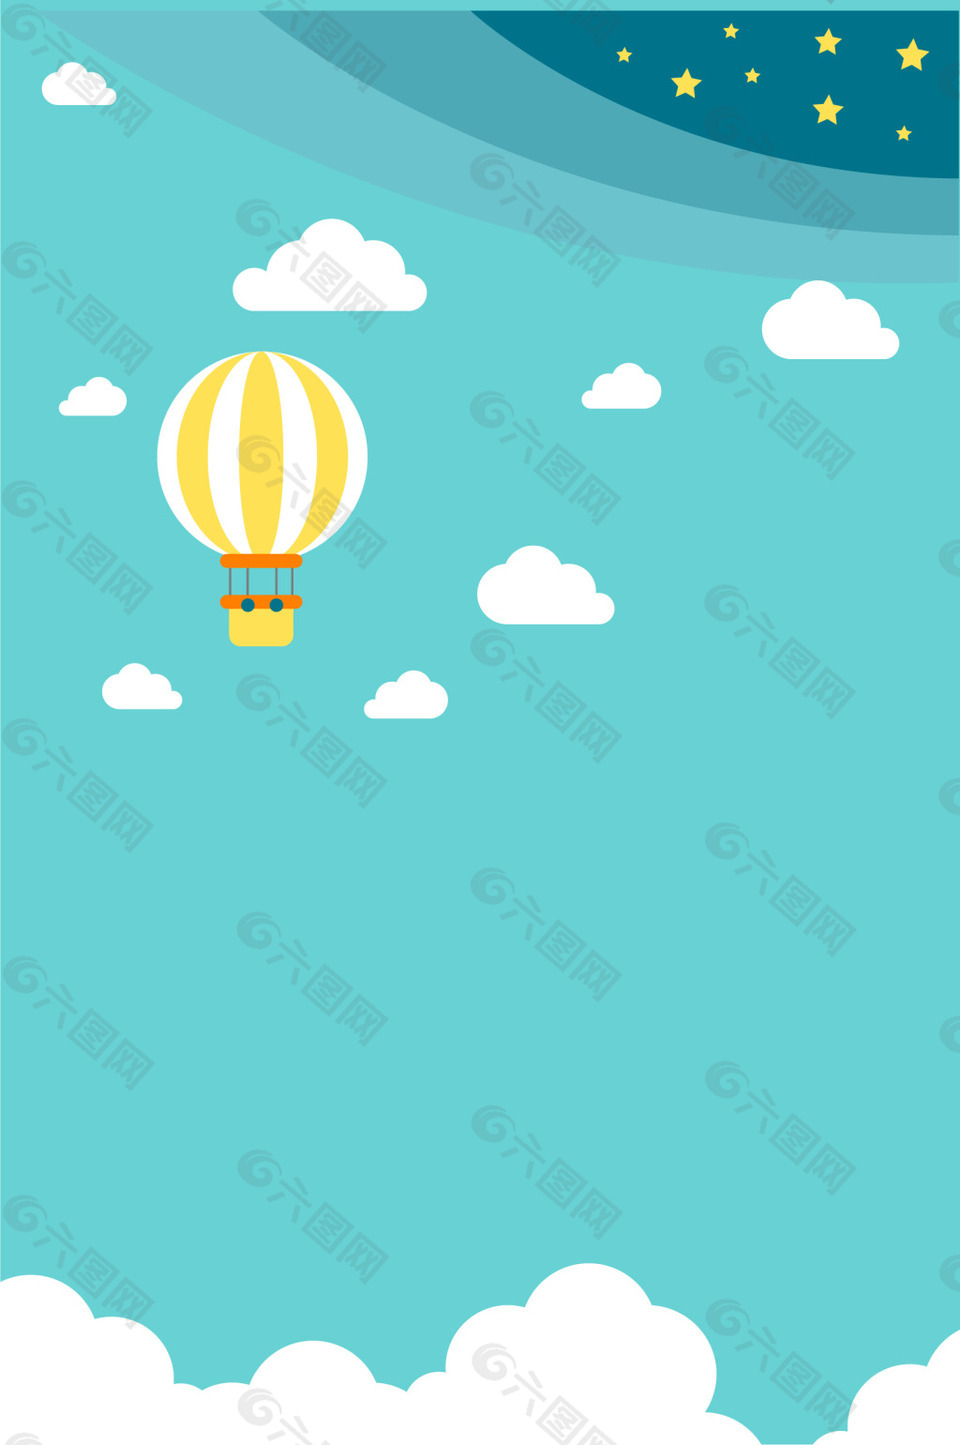 矢量扁平化卡通热气球天空背景